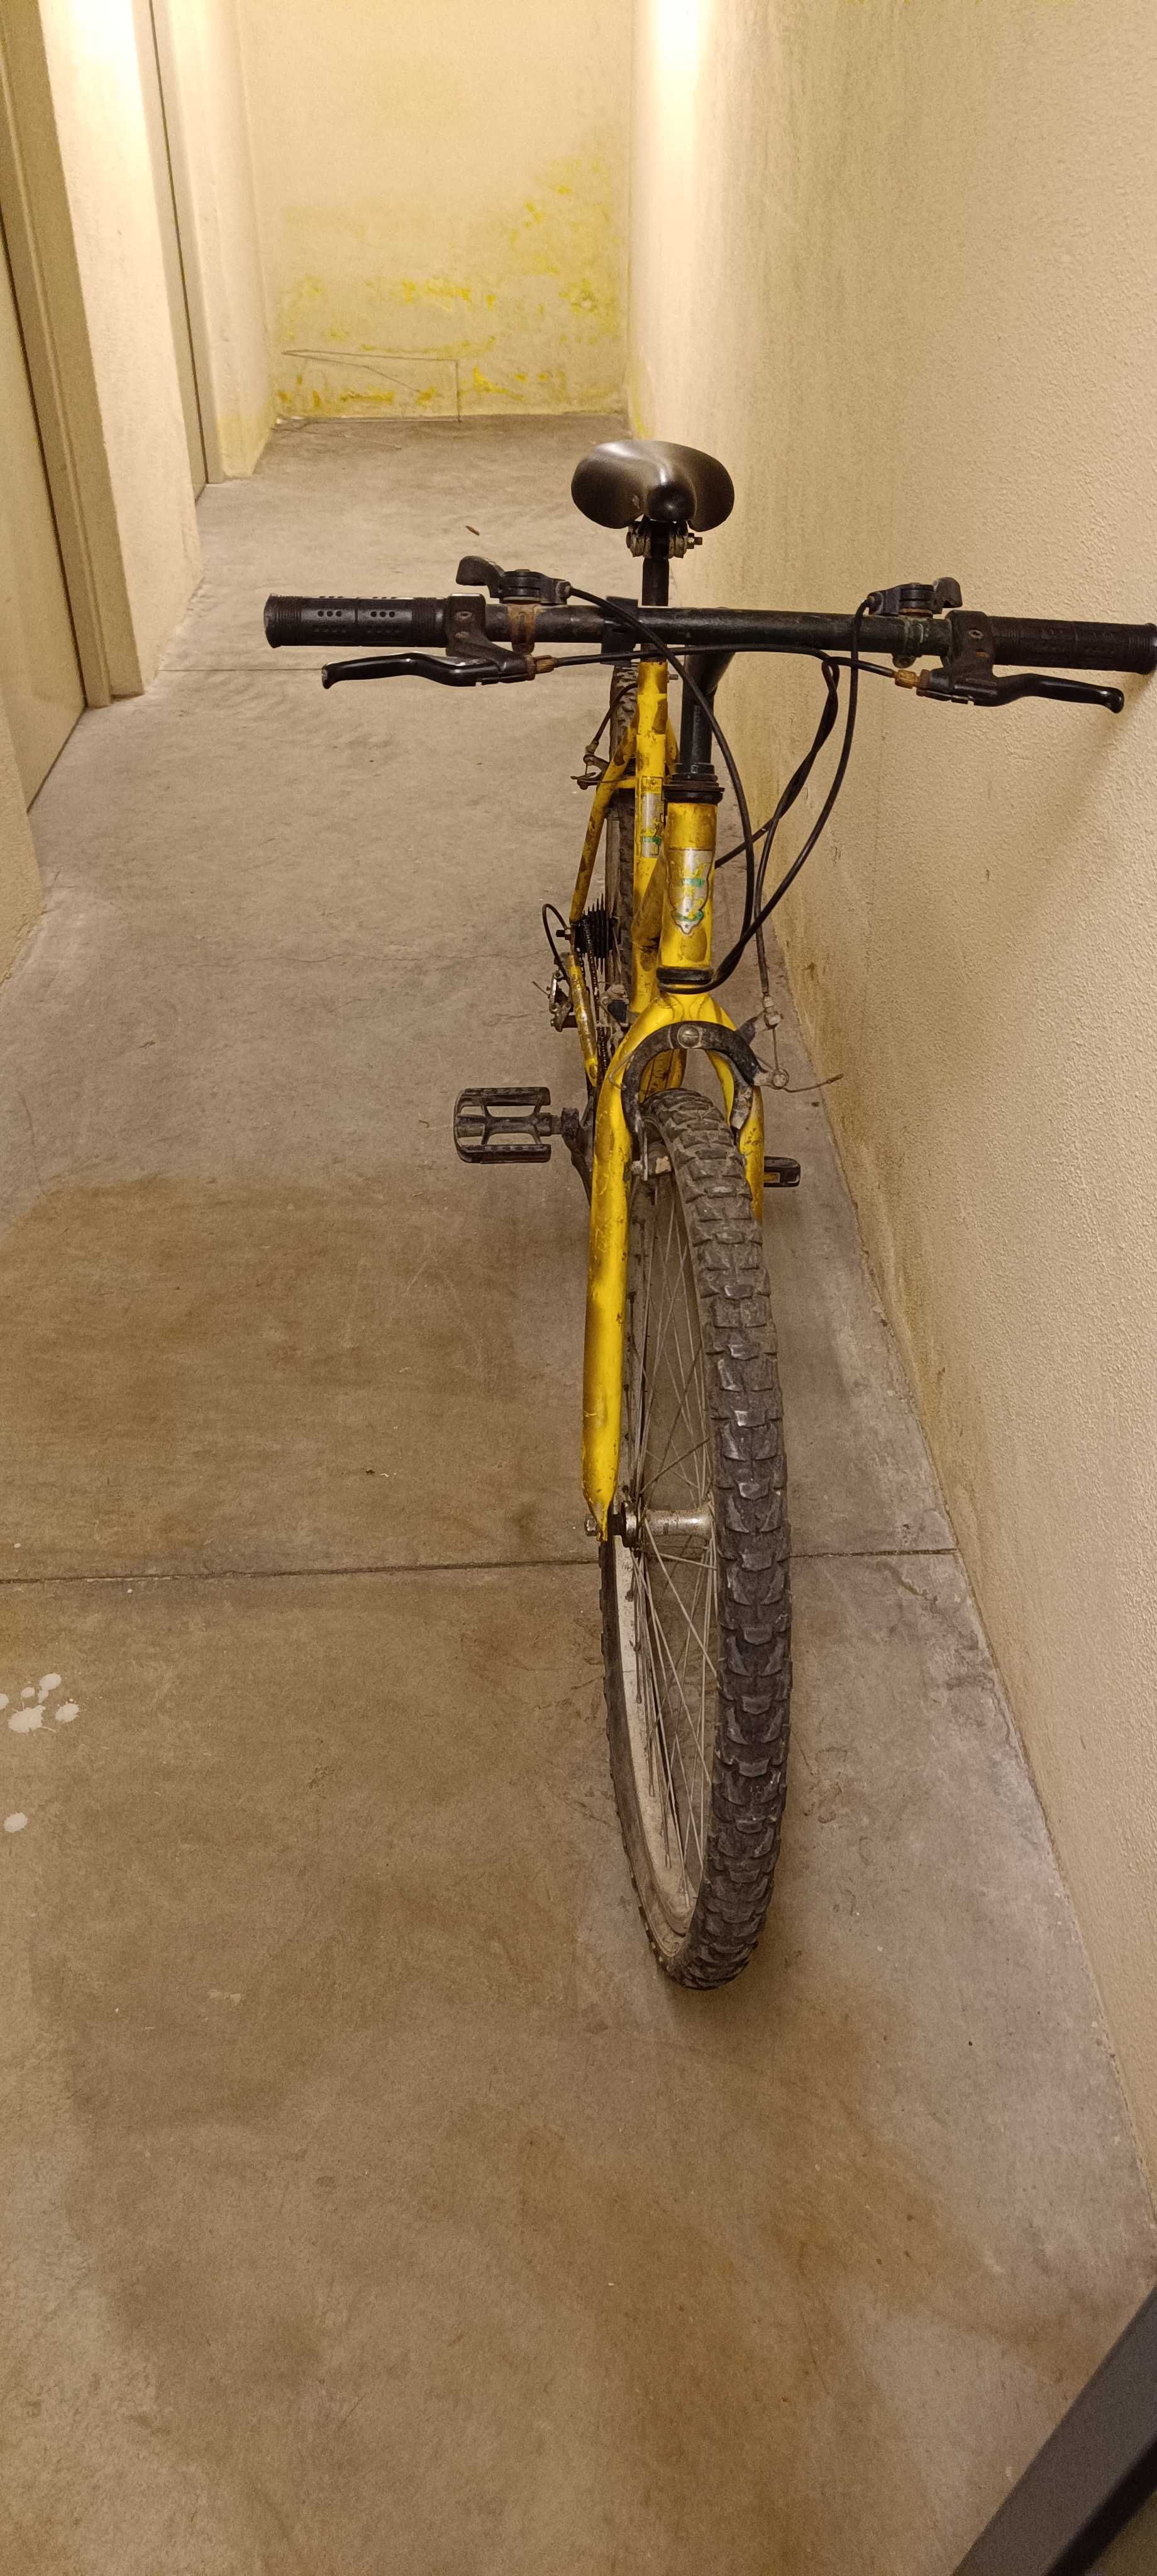 Bicicletas antigas com pouco uso